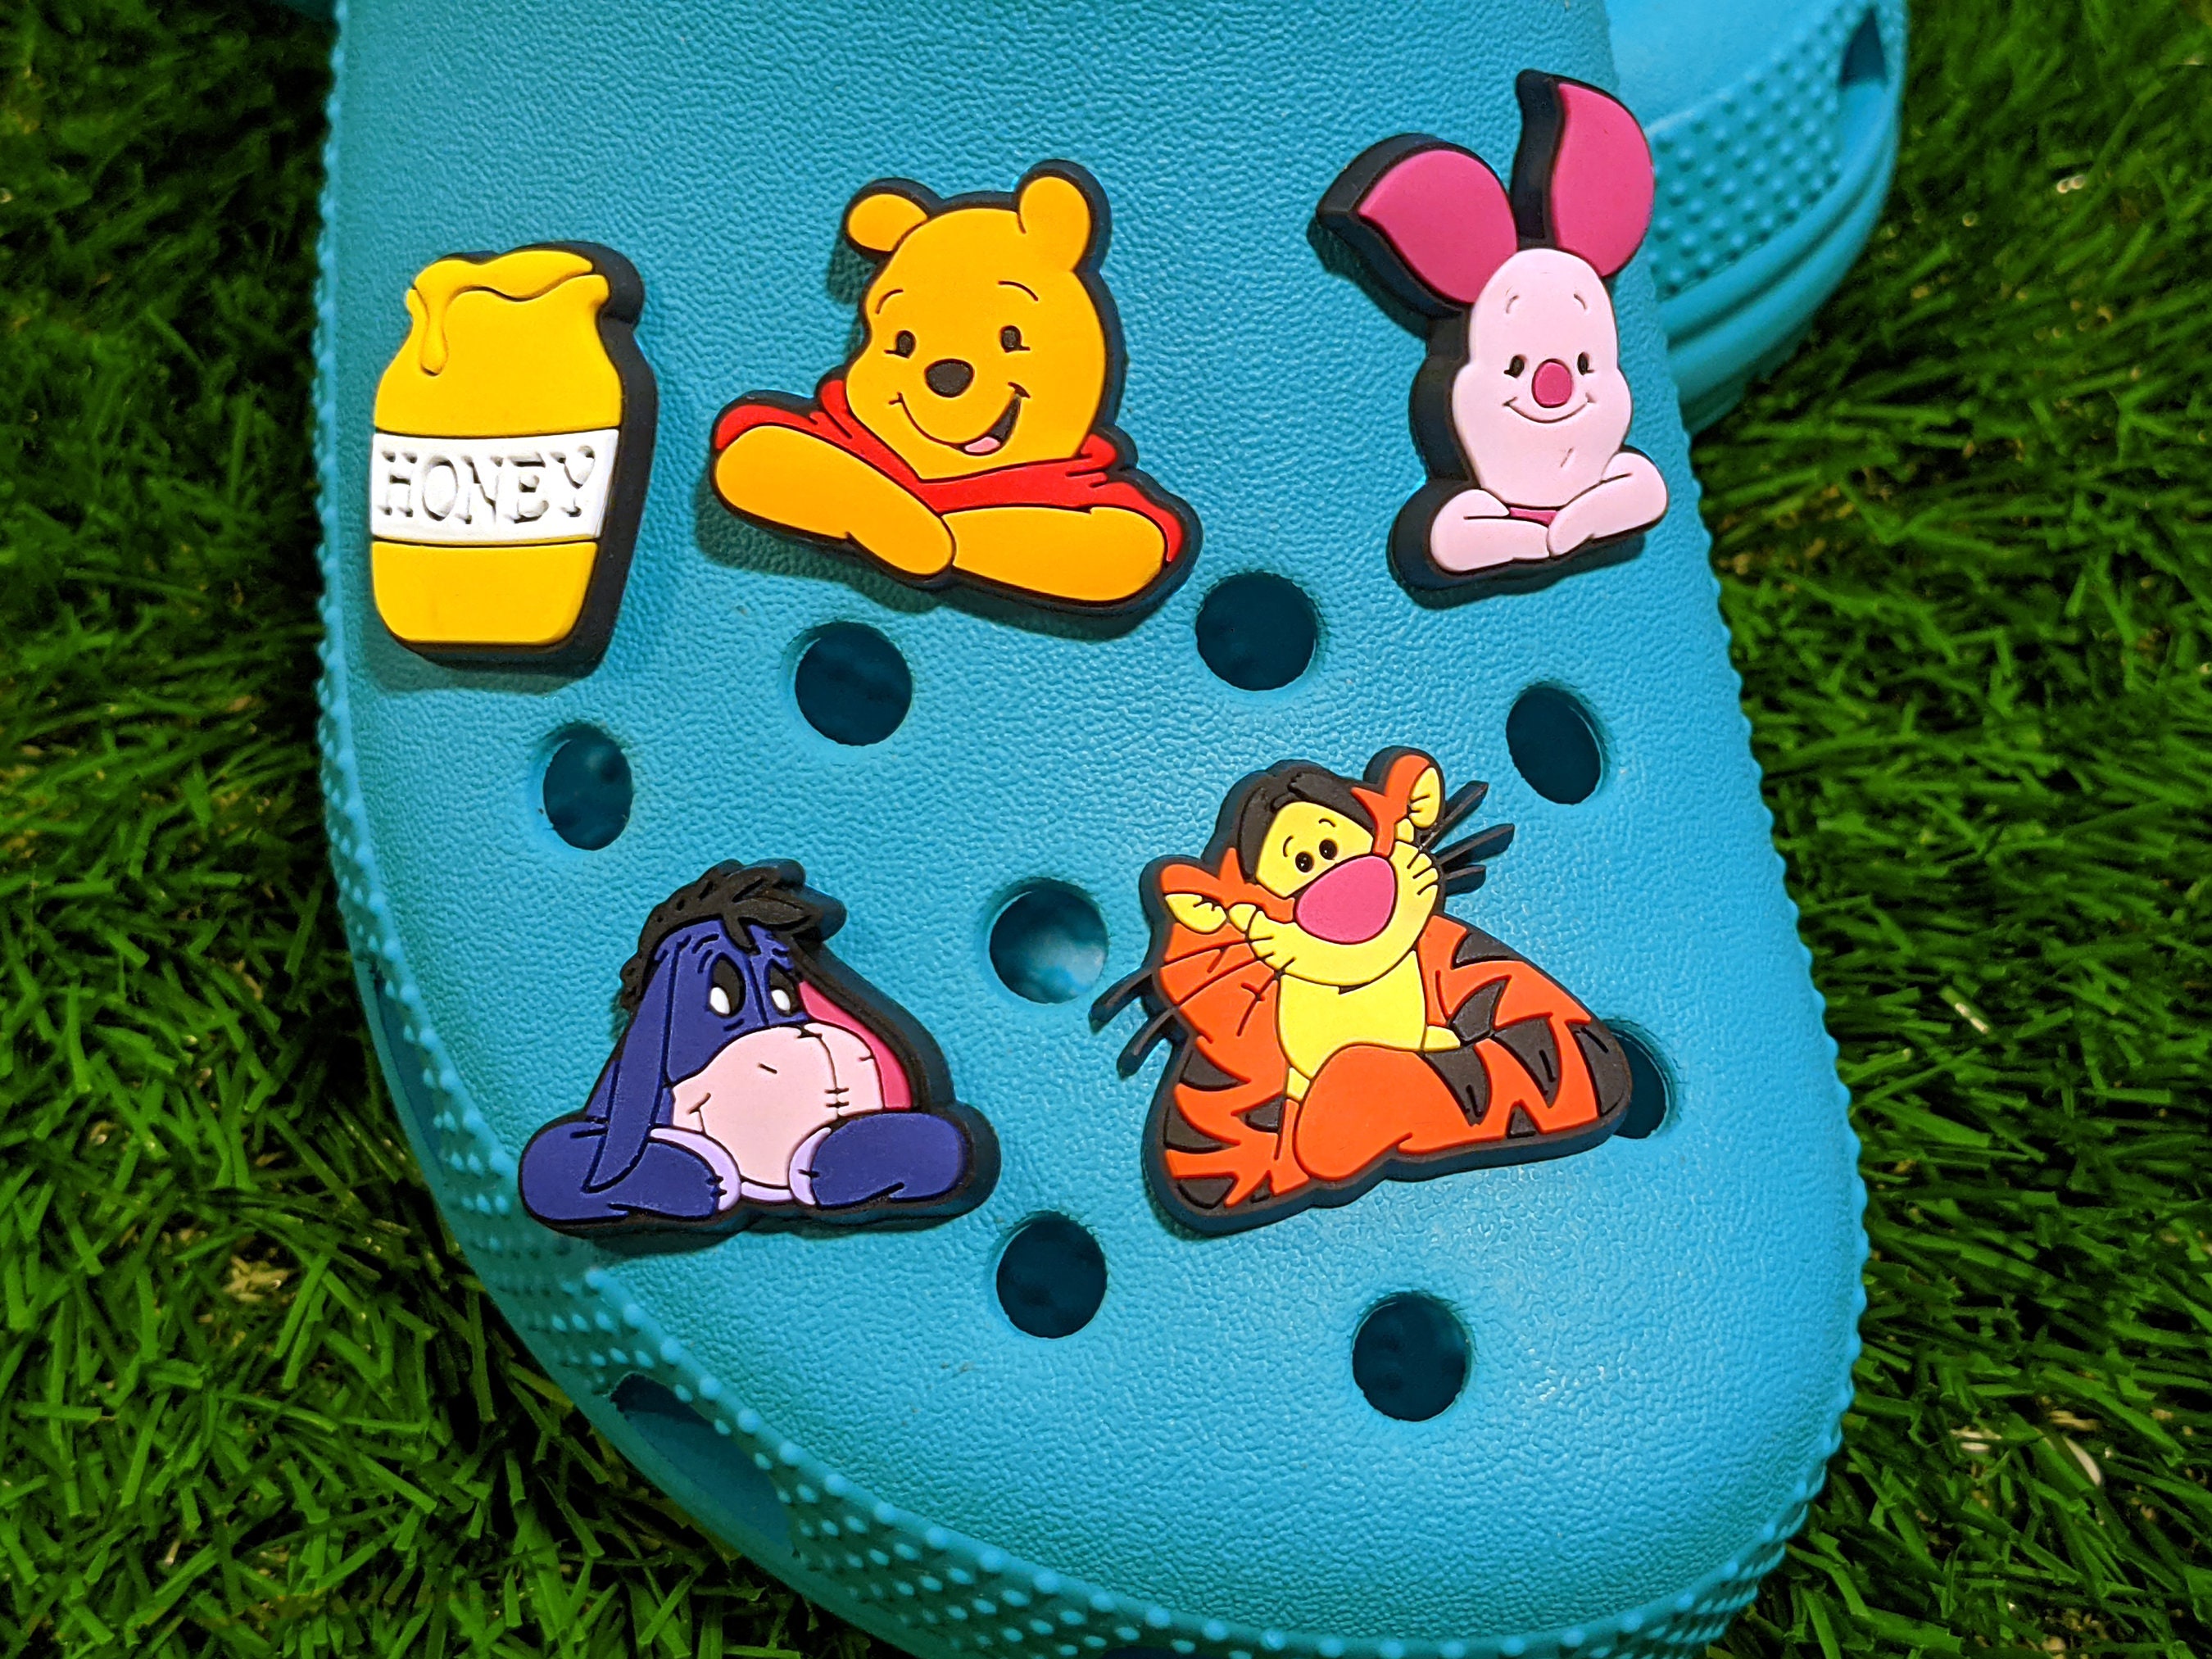 Jumbo Winnie the Pooh Croc Charms – TheOneShop